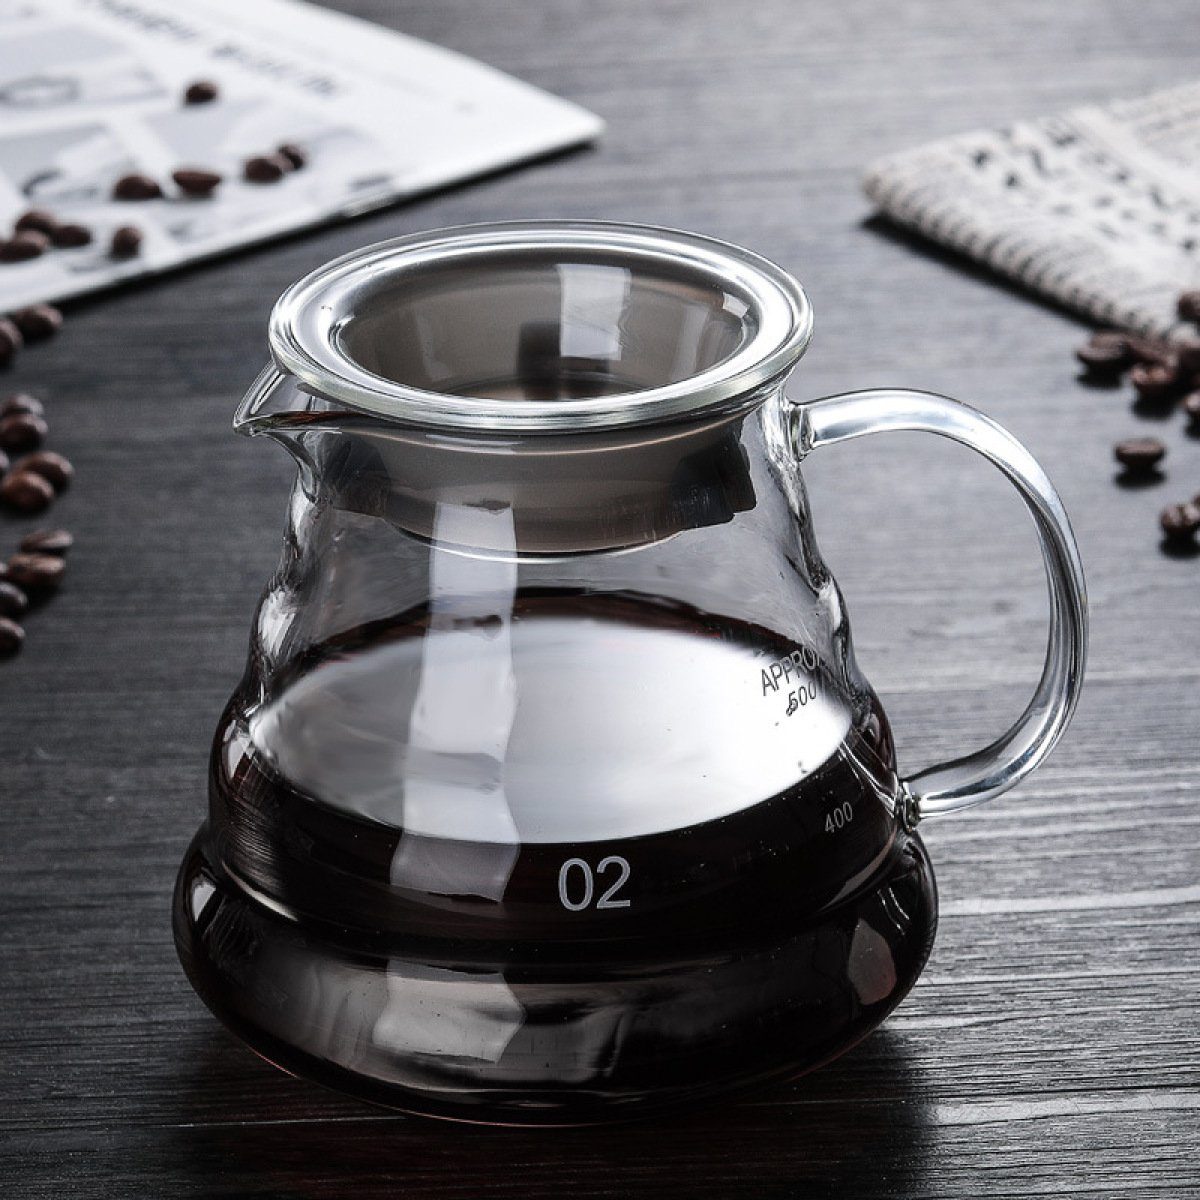 Rwoythk Kaffeekanne Handgebrühte Kaffeekanne Heim-Kaffeekanne Sharing-Topf, Glas, aus